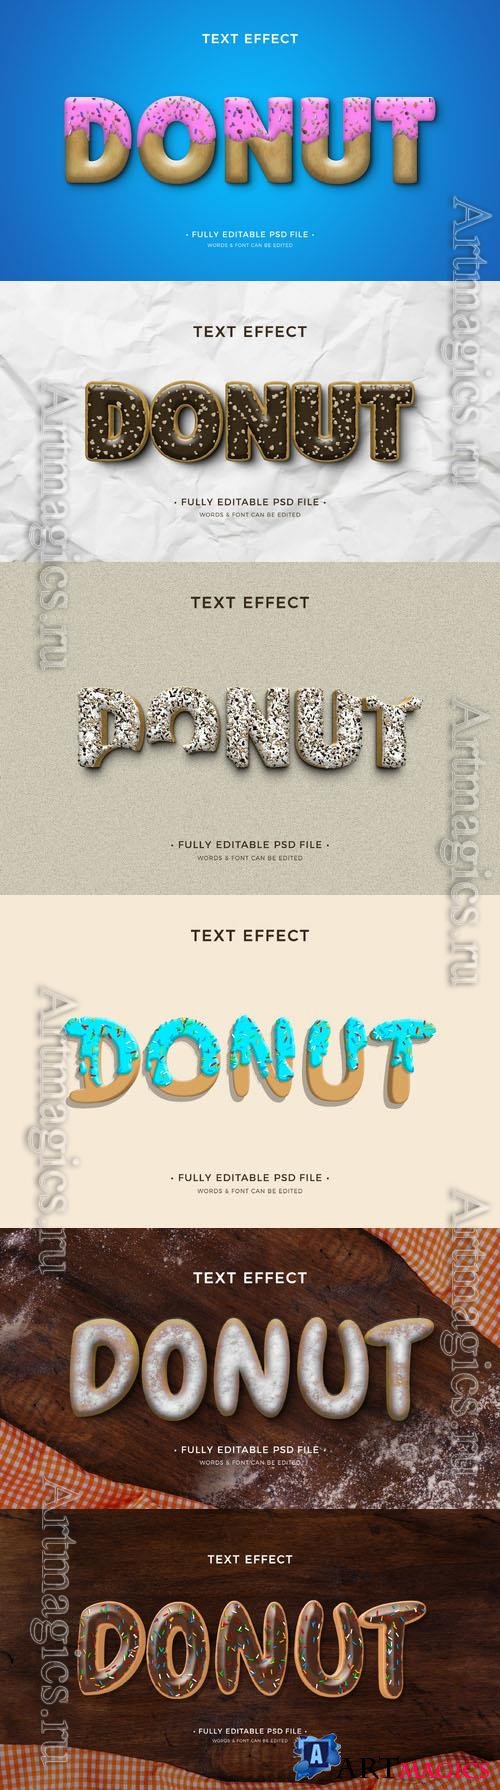 PSD donut text effect